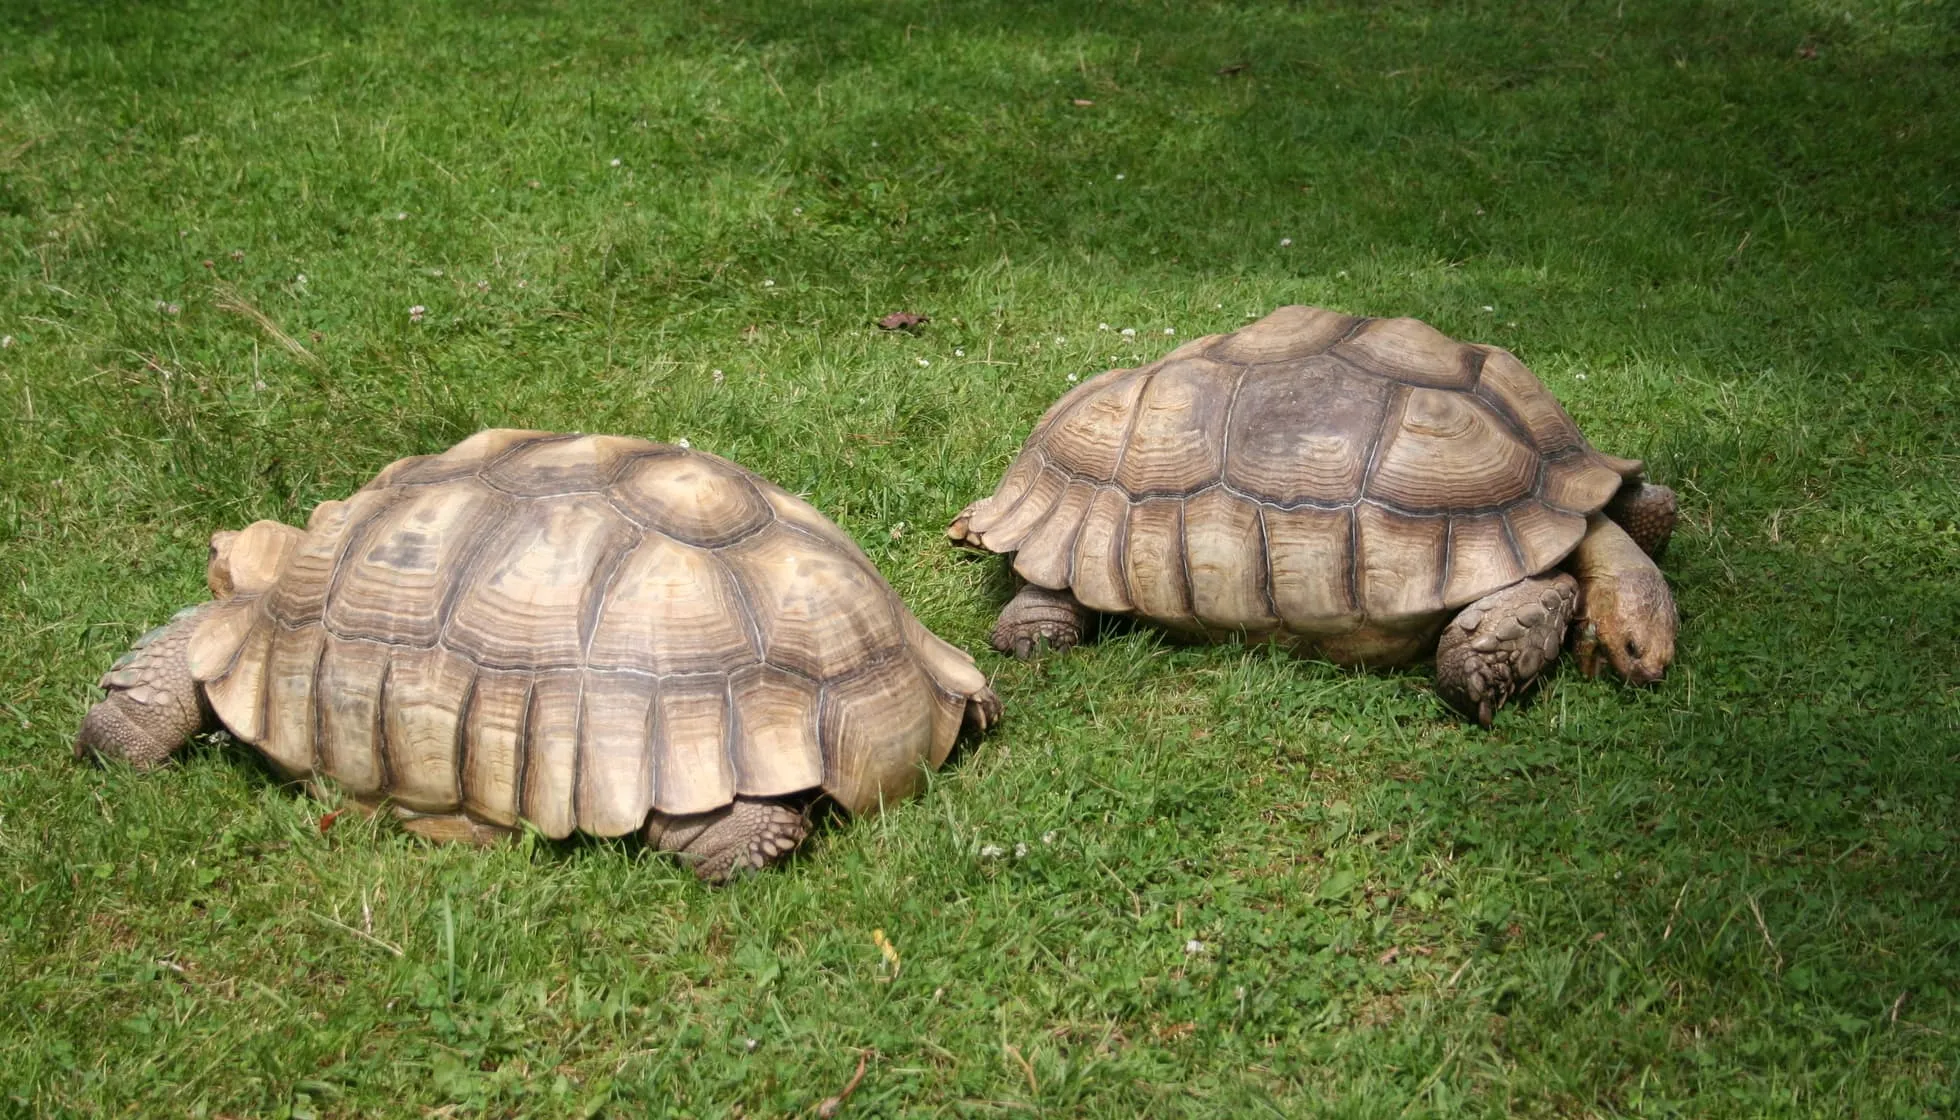 Two tortoises eating grass